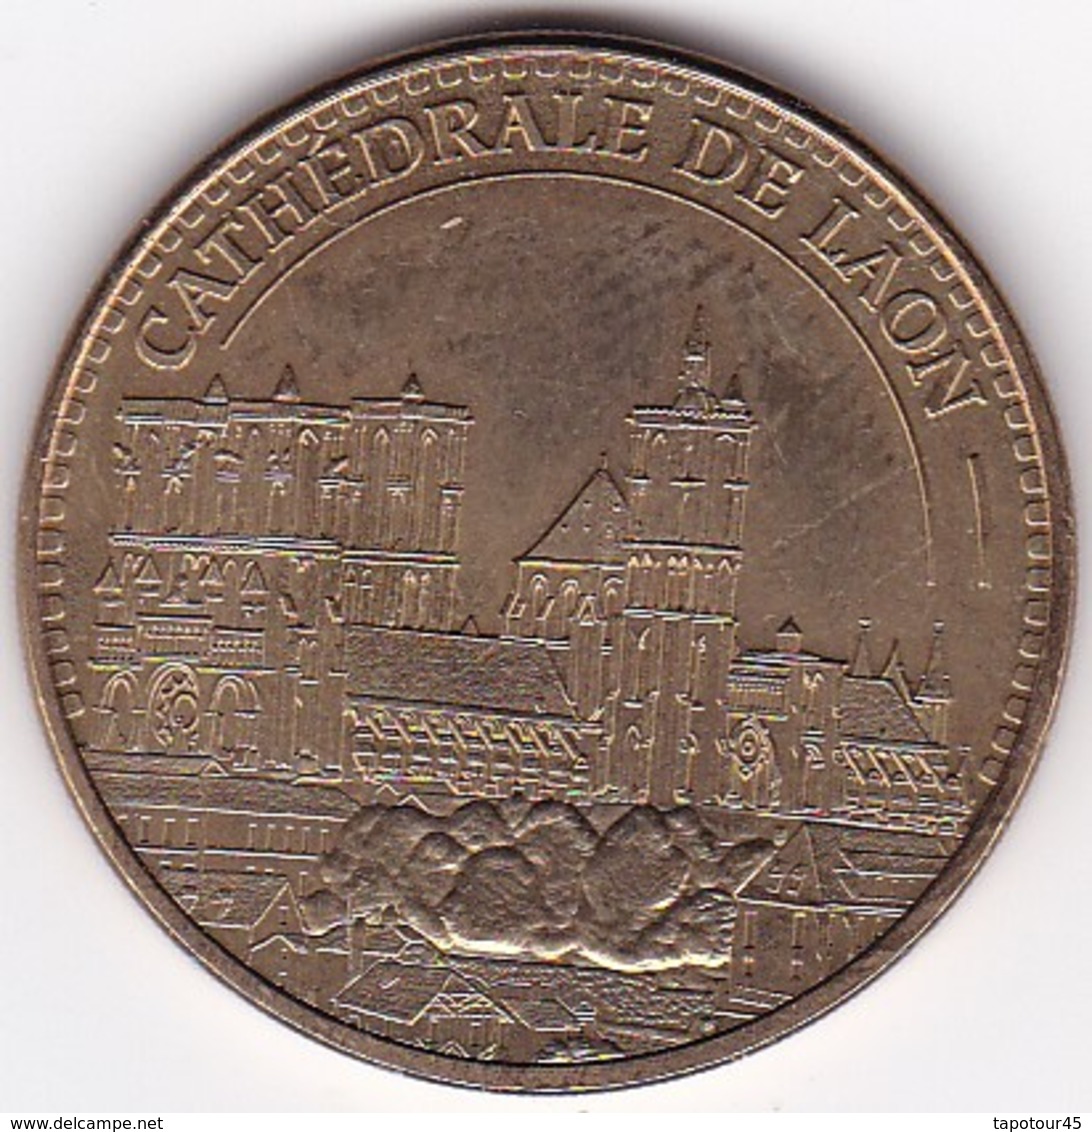 PL 2) 7 > Médaille Souvenir Ou Touristique > Laon "Cathédrale"  > Dia. 34 Mm - 2013